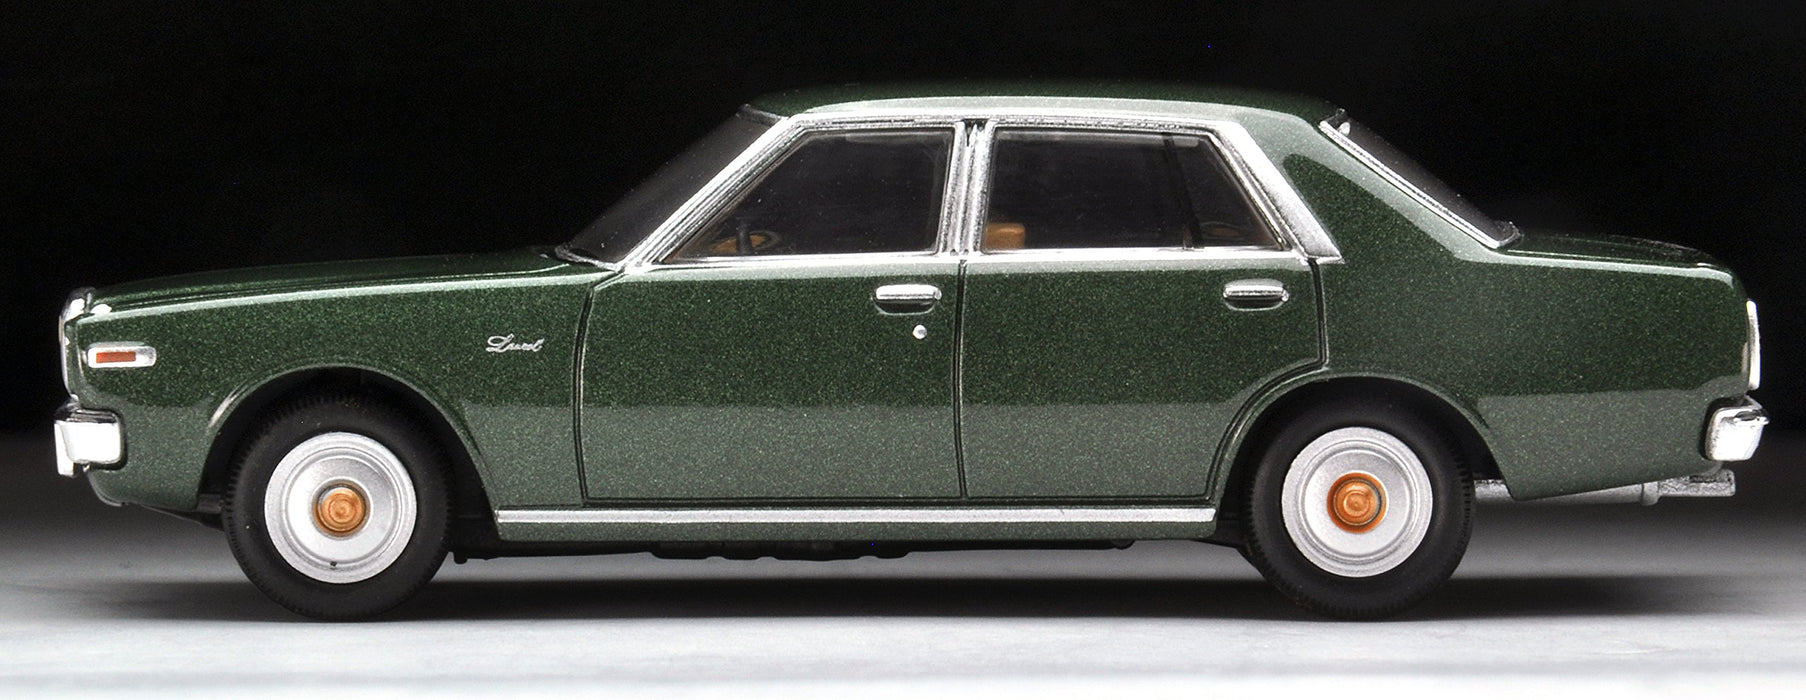 Tomytec Tomica Limited Vintage Neo 1/64 Nissan Laurel 1977 Green Model Car